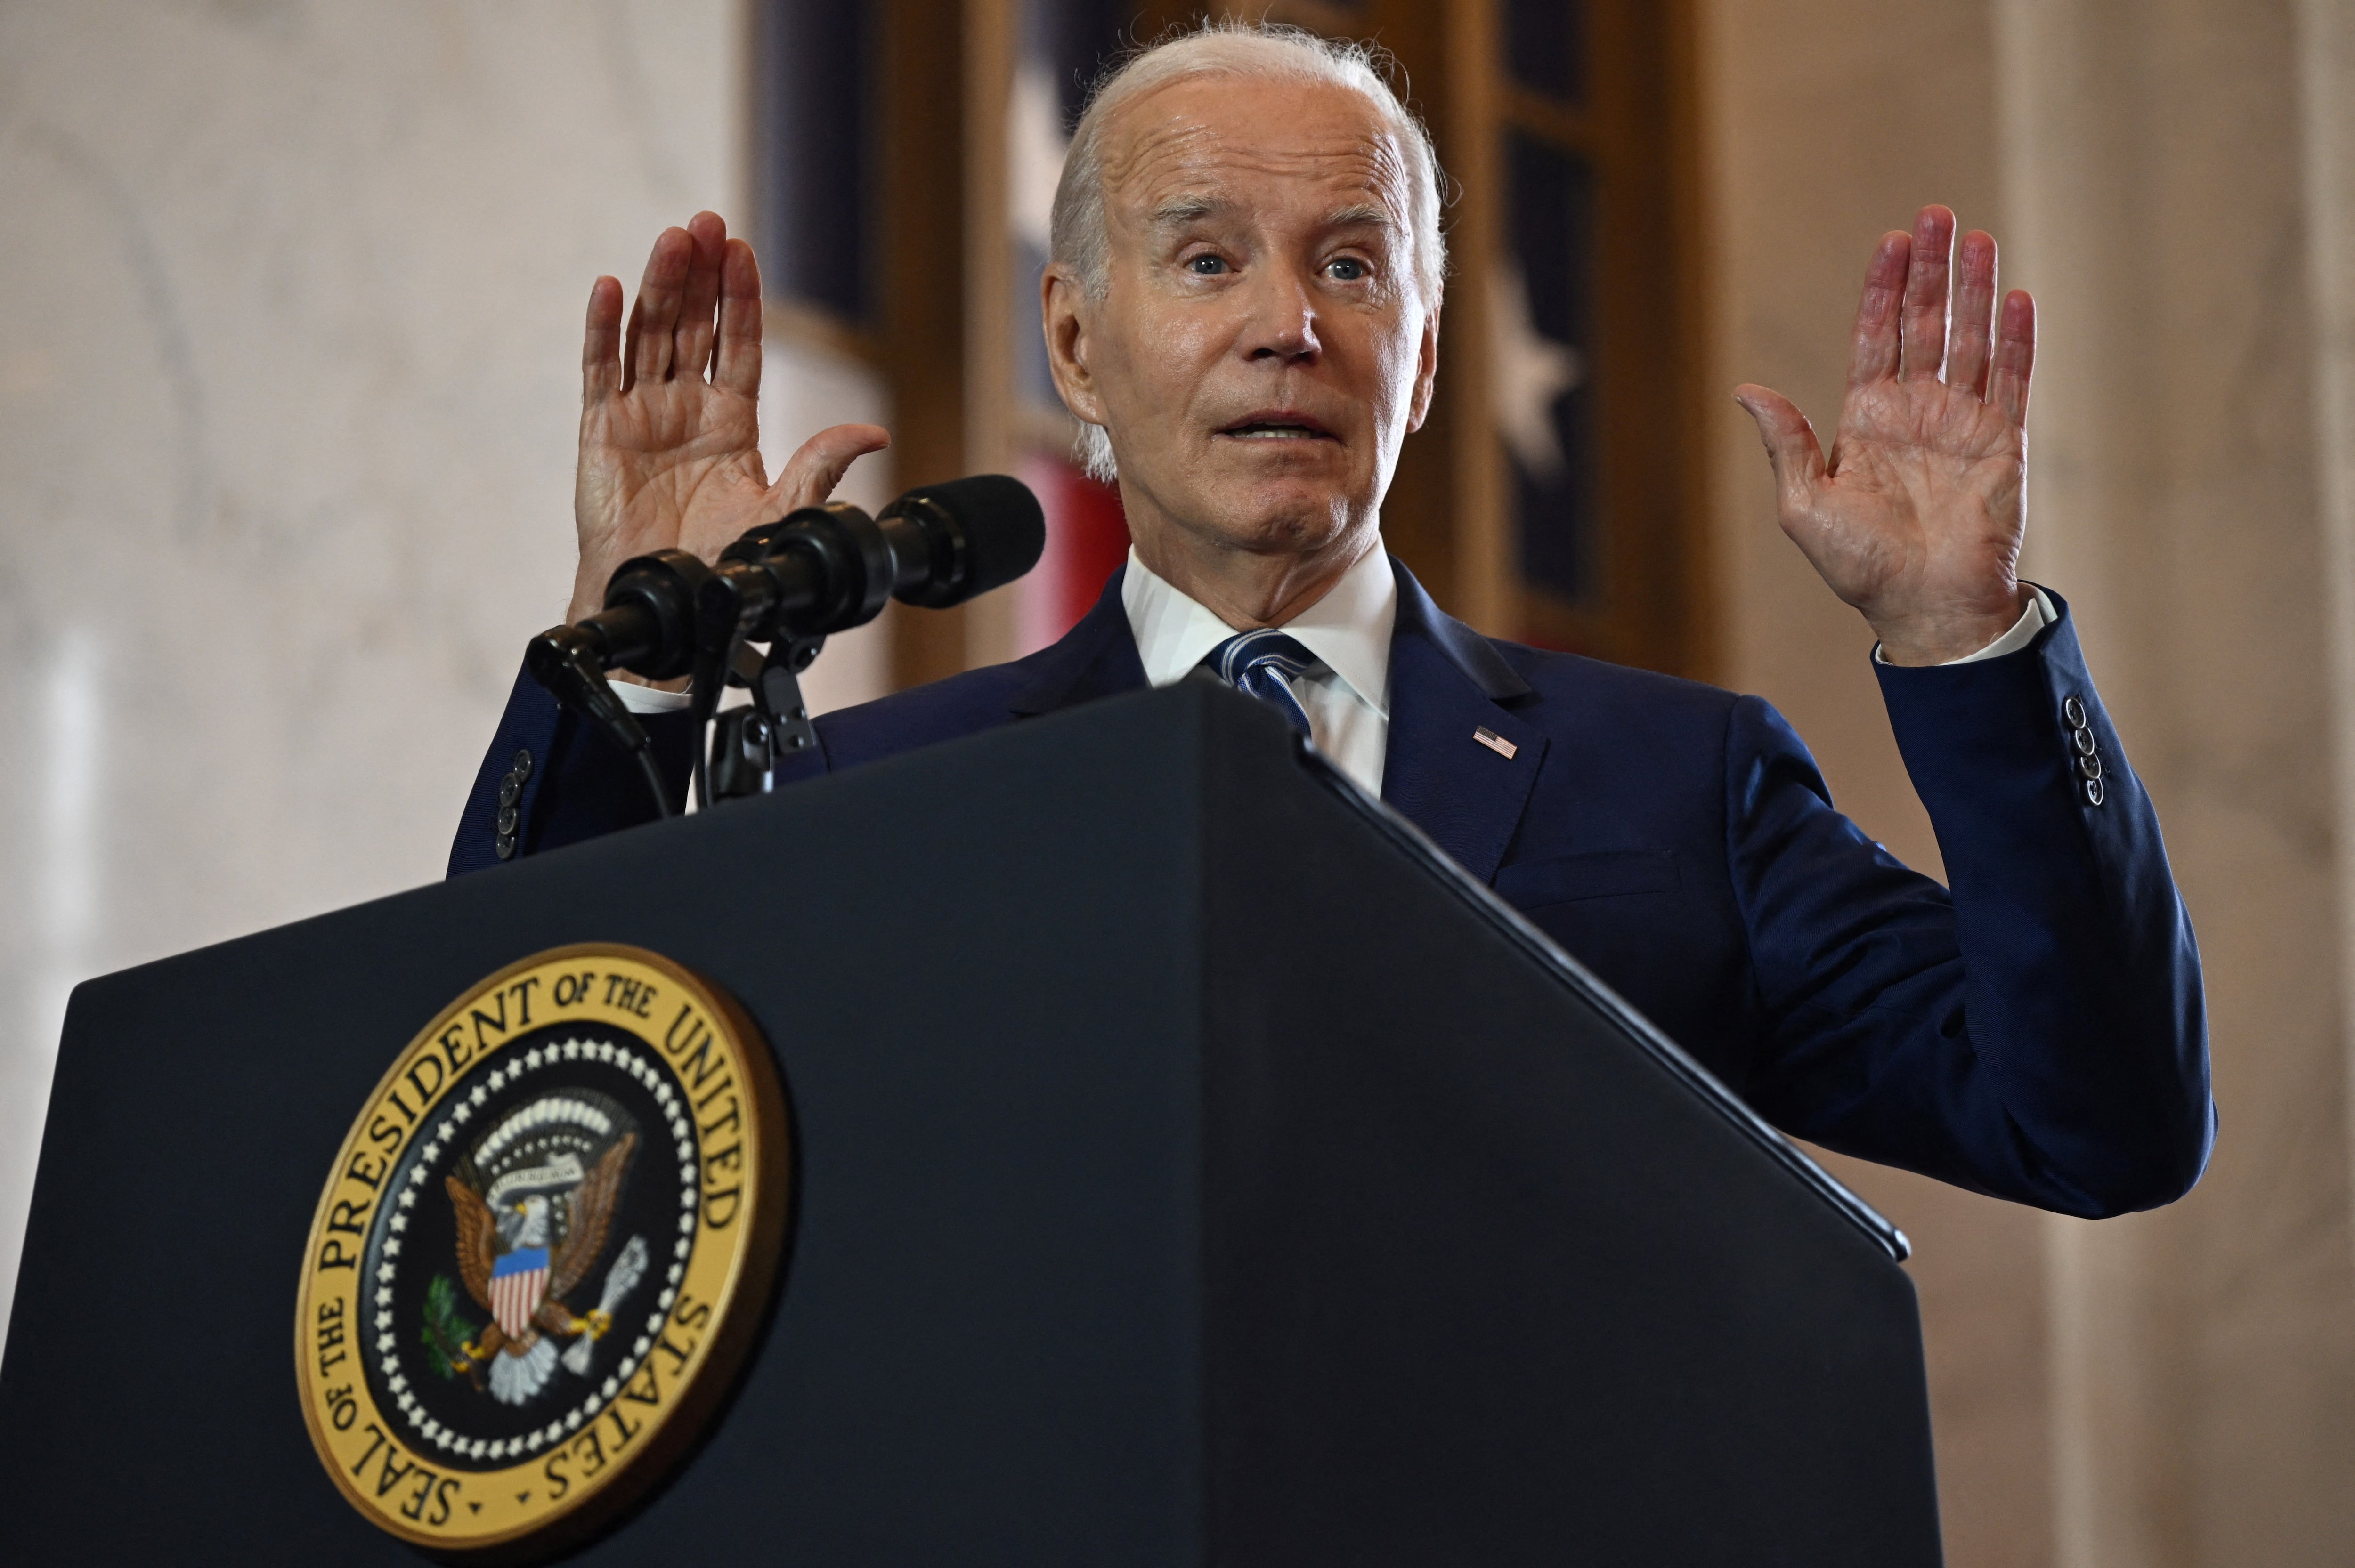 Joe Biden cometió un lapsus al mencionar que Rusia está perdiendo la guerra en “Irak” en lugar de en Ucrania, error que ya había cometido este martes durante un mitin.